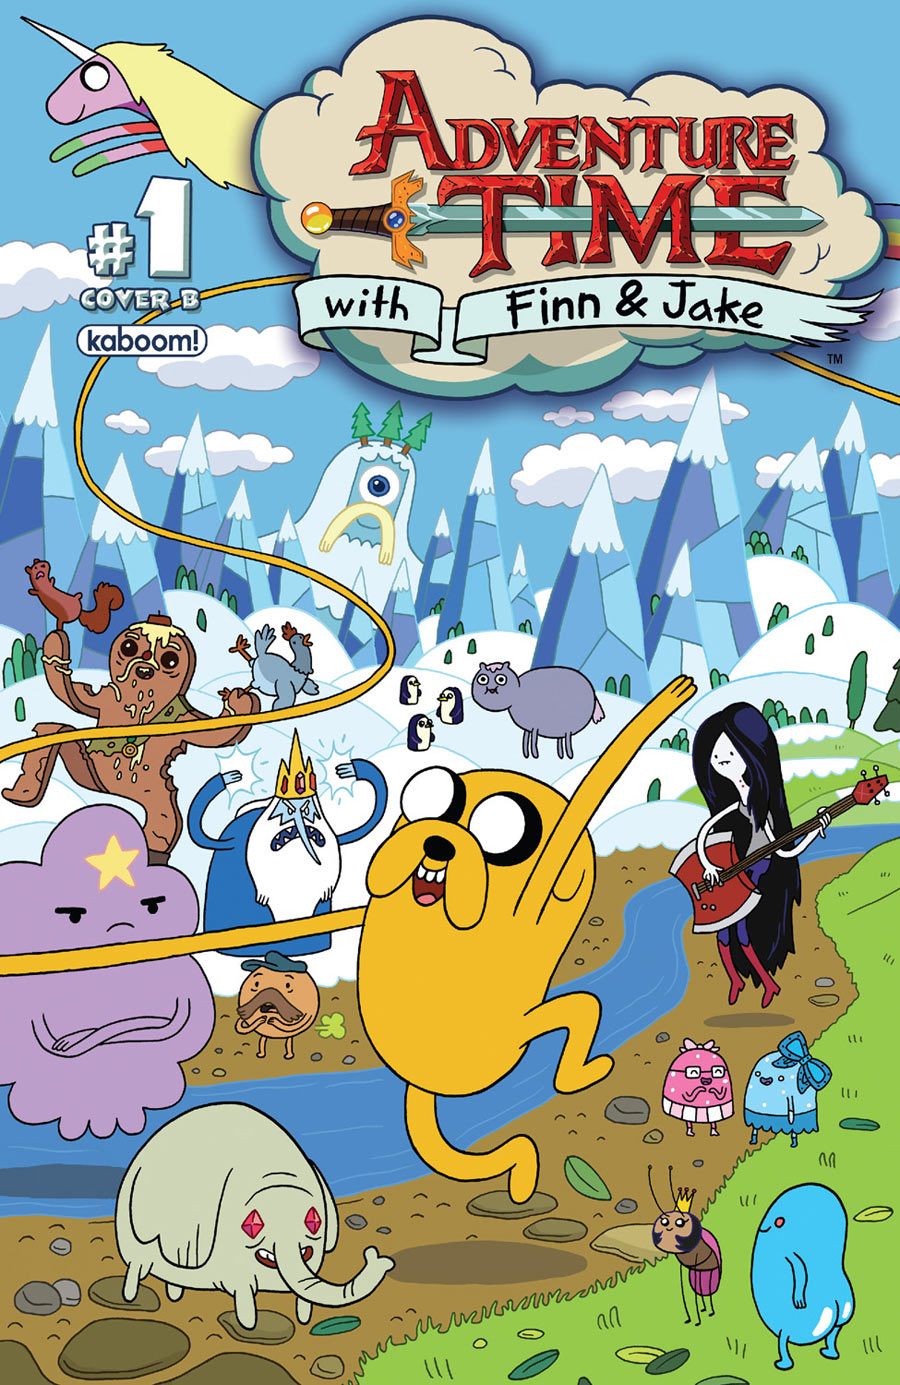 Adventure Time fanart - Finally Married by 